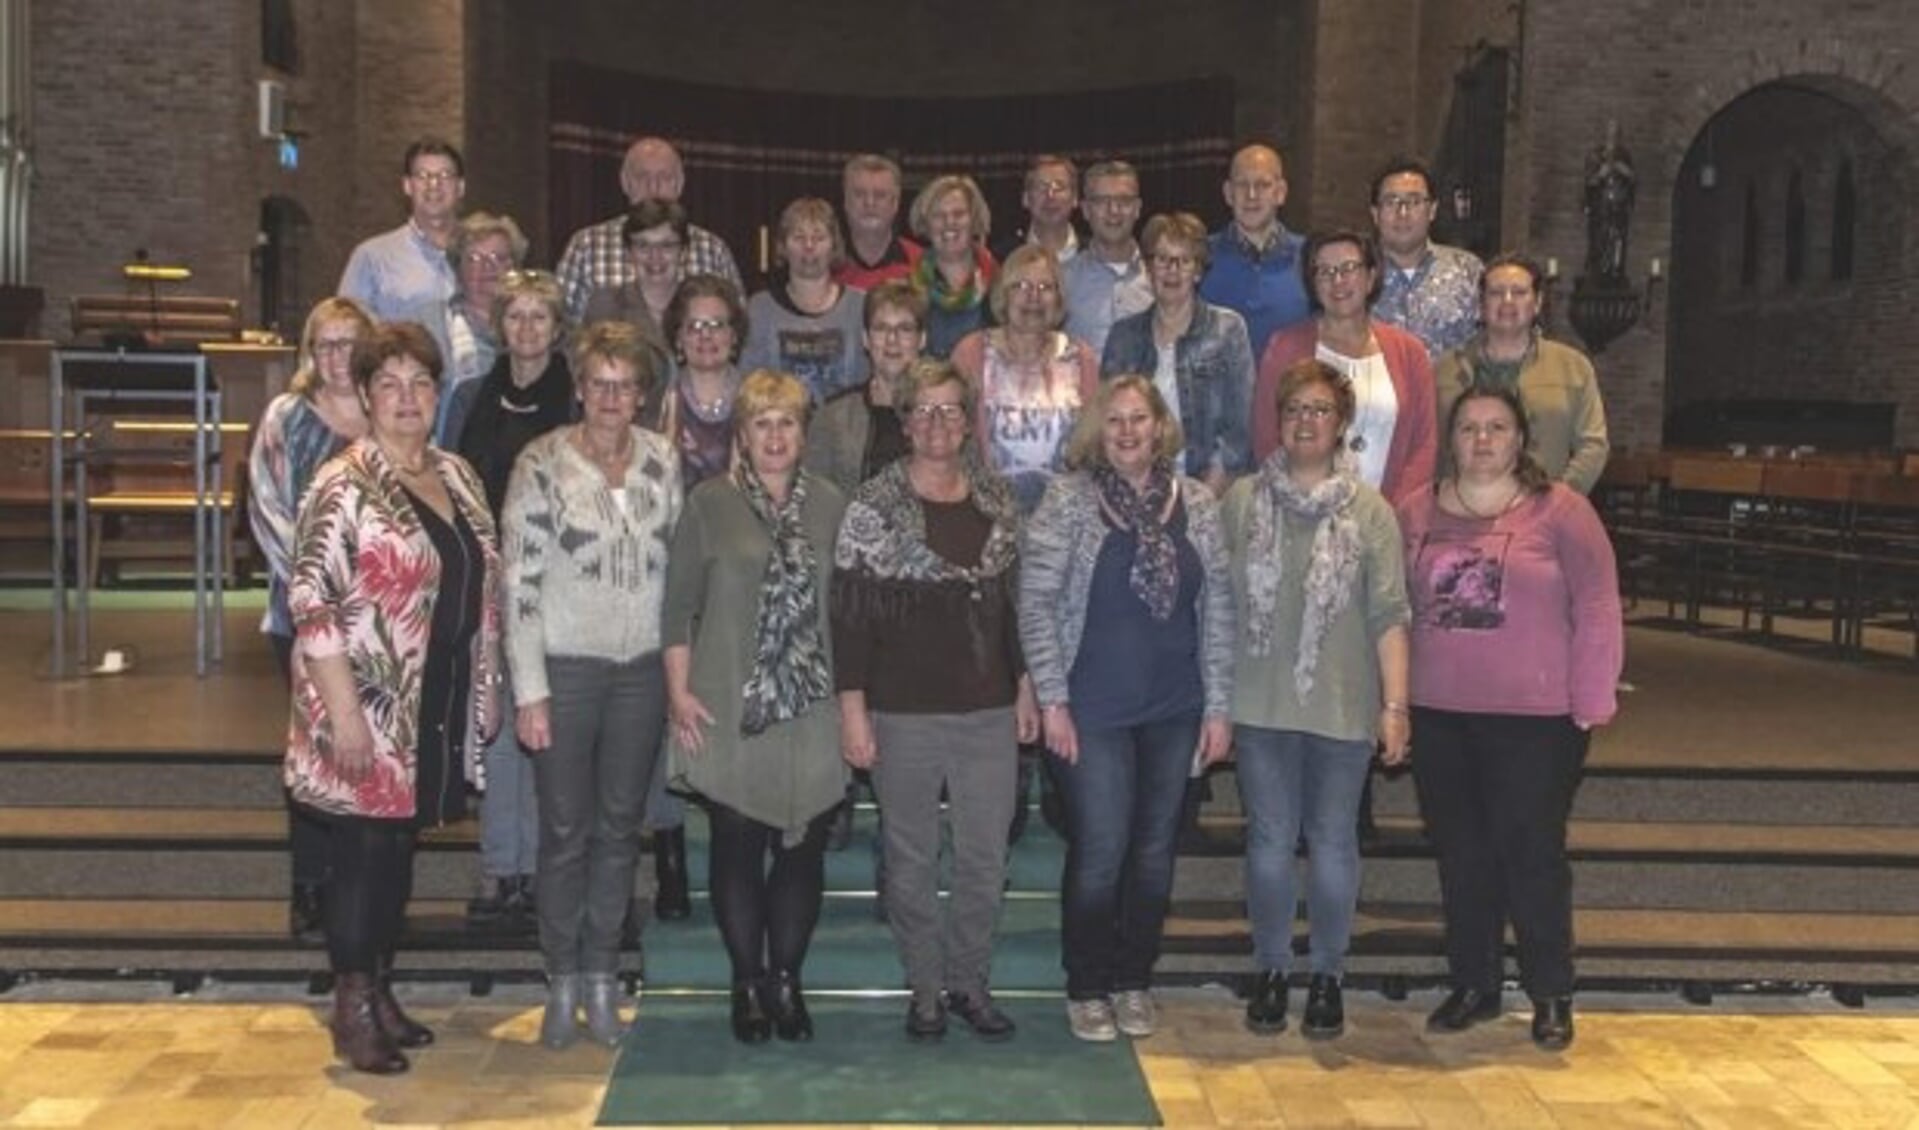 The Lord's Choir, na vijftig jaar nog steeds een springlevend koor met veel reputatie